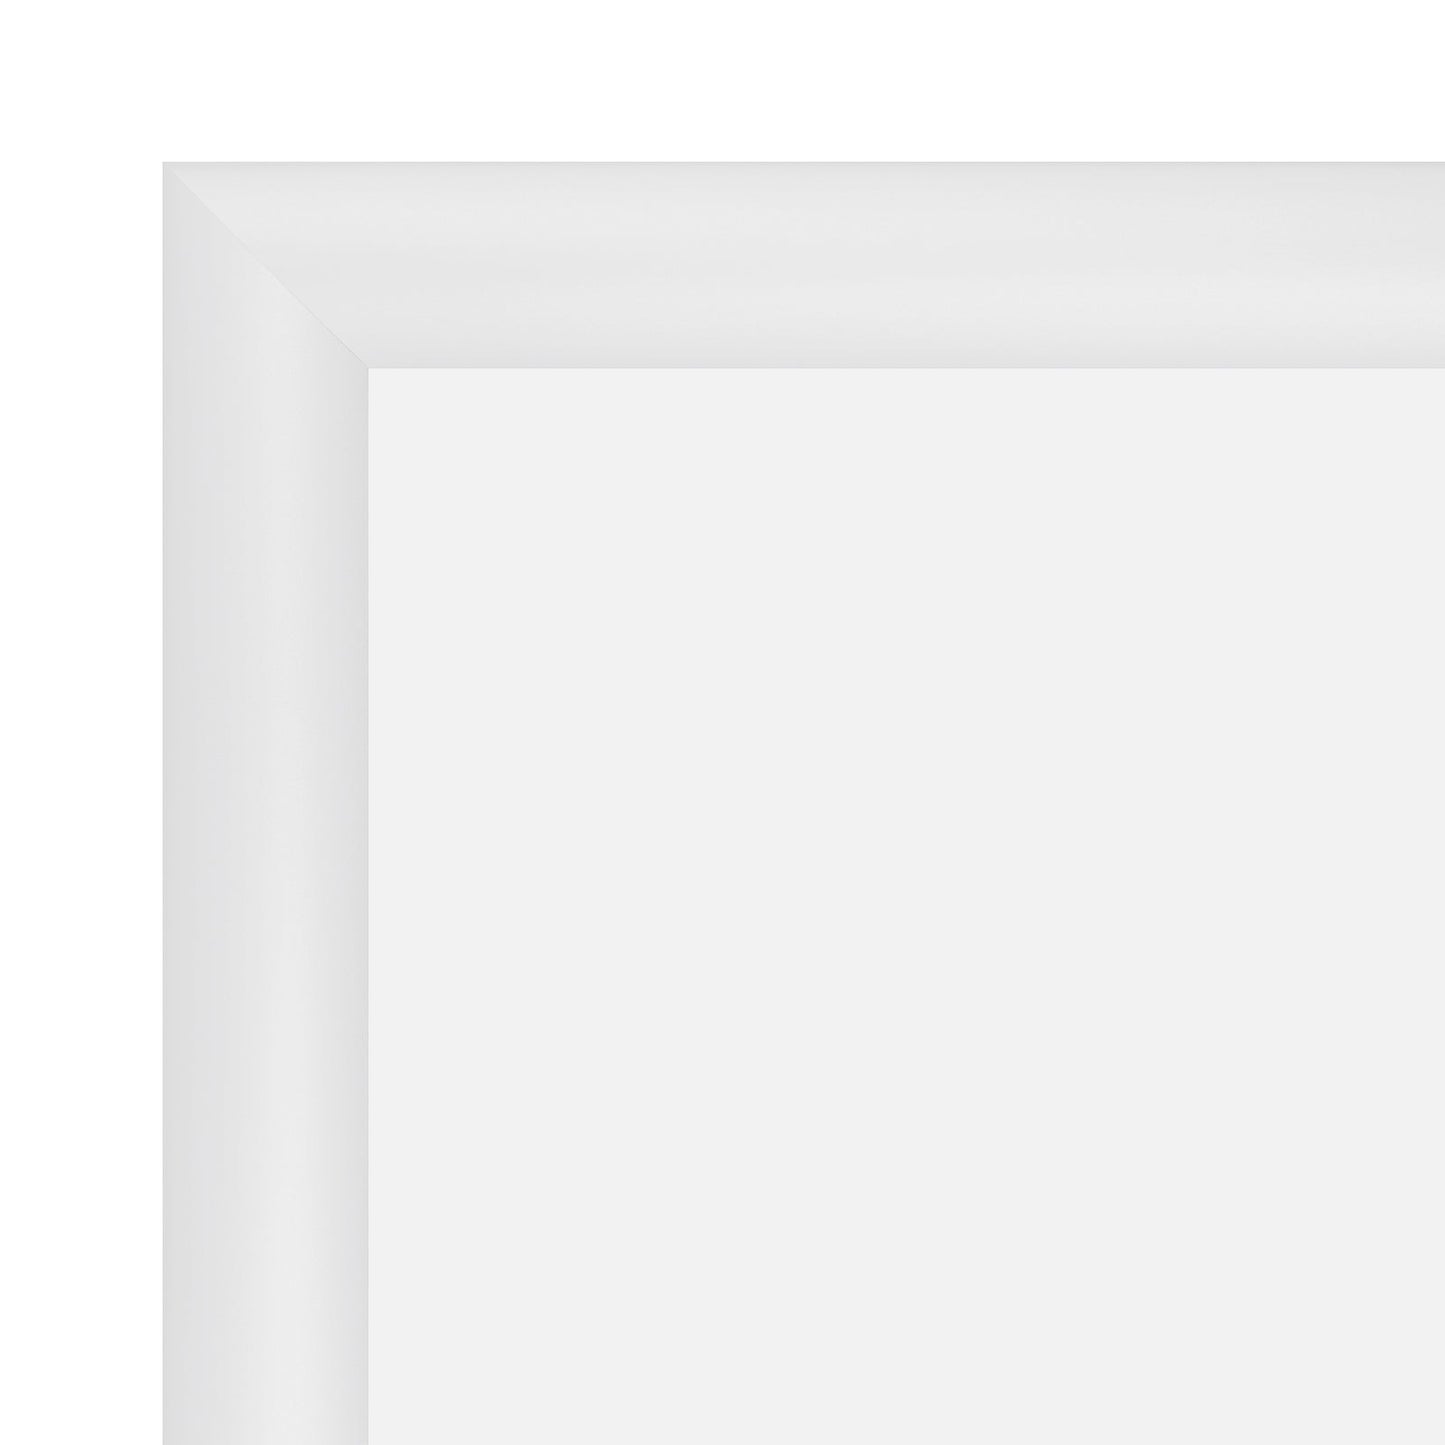 11x17 White SnapeZo® Snap Frame - 1.2" Profile